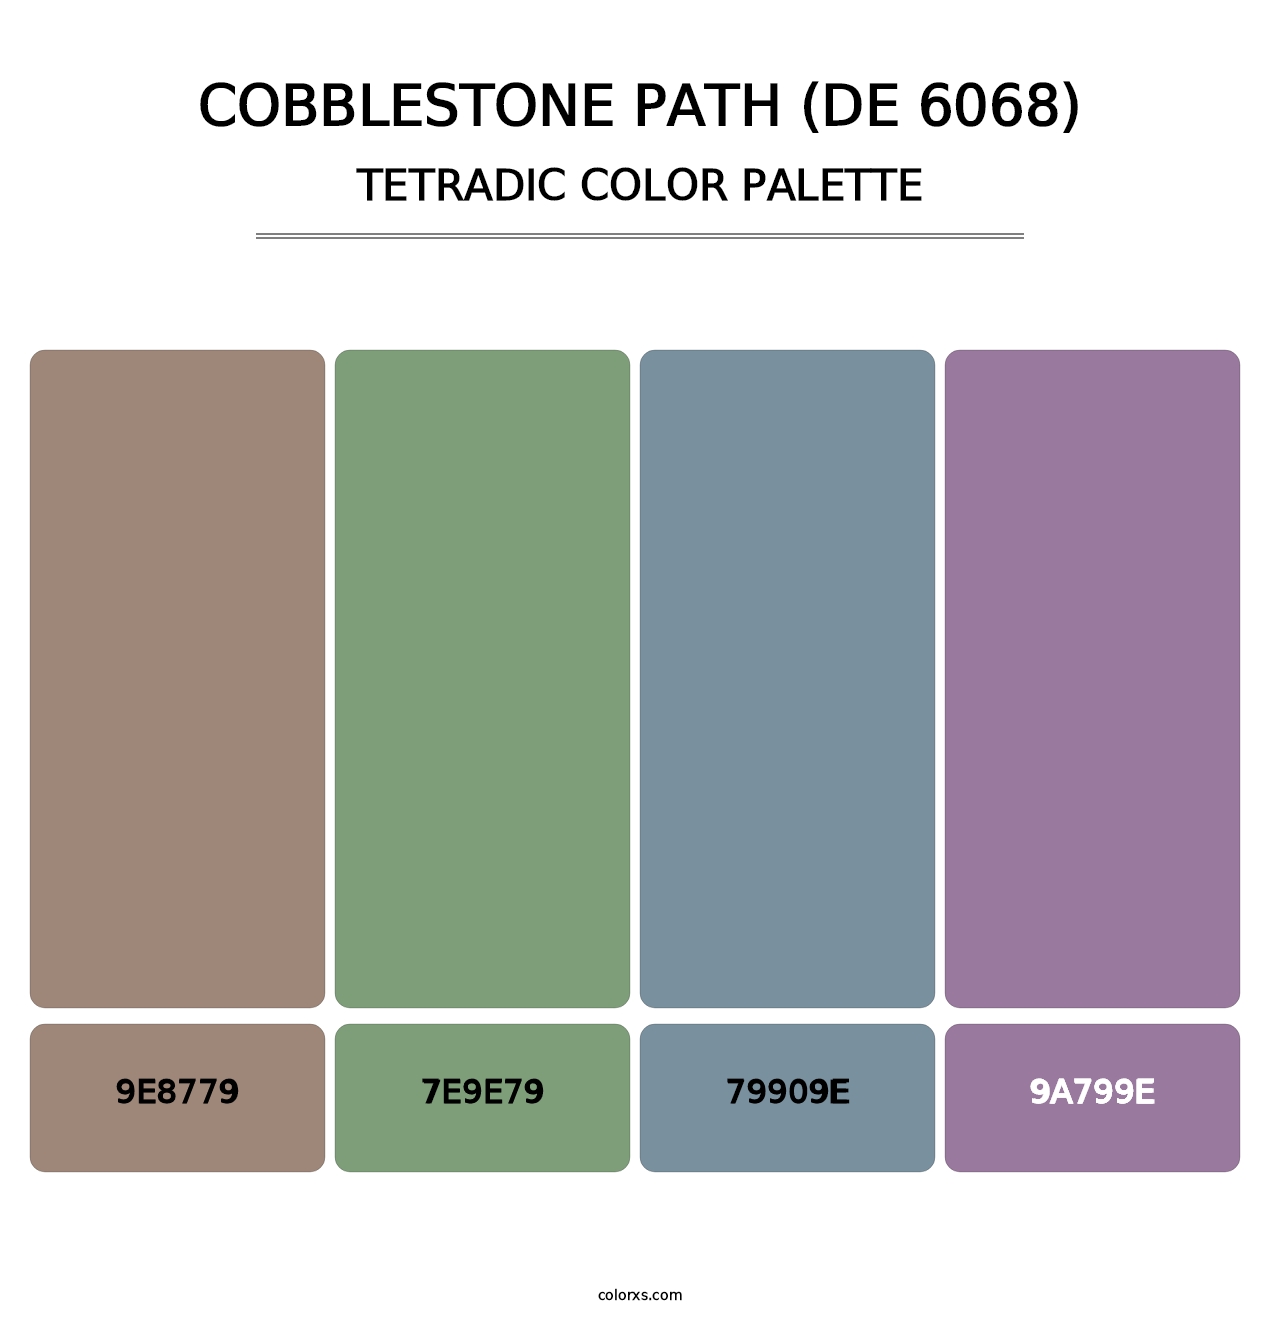 Cobblestone Path (DE 6068) - Tetradic Color Palette